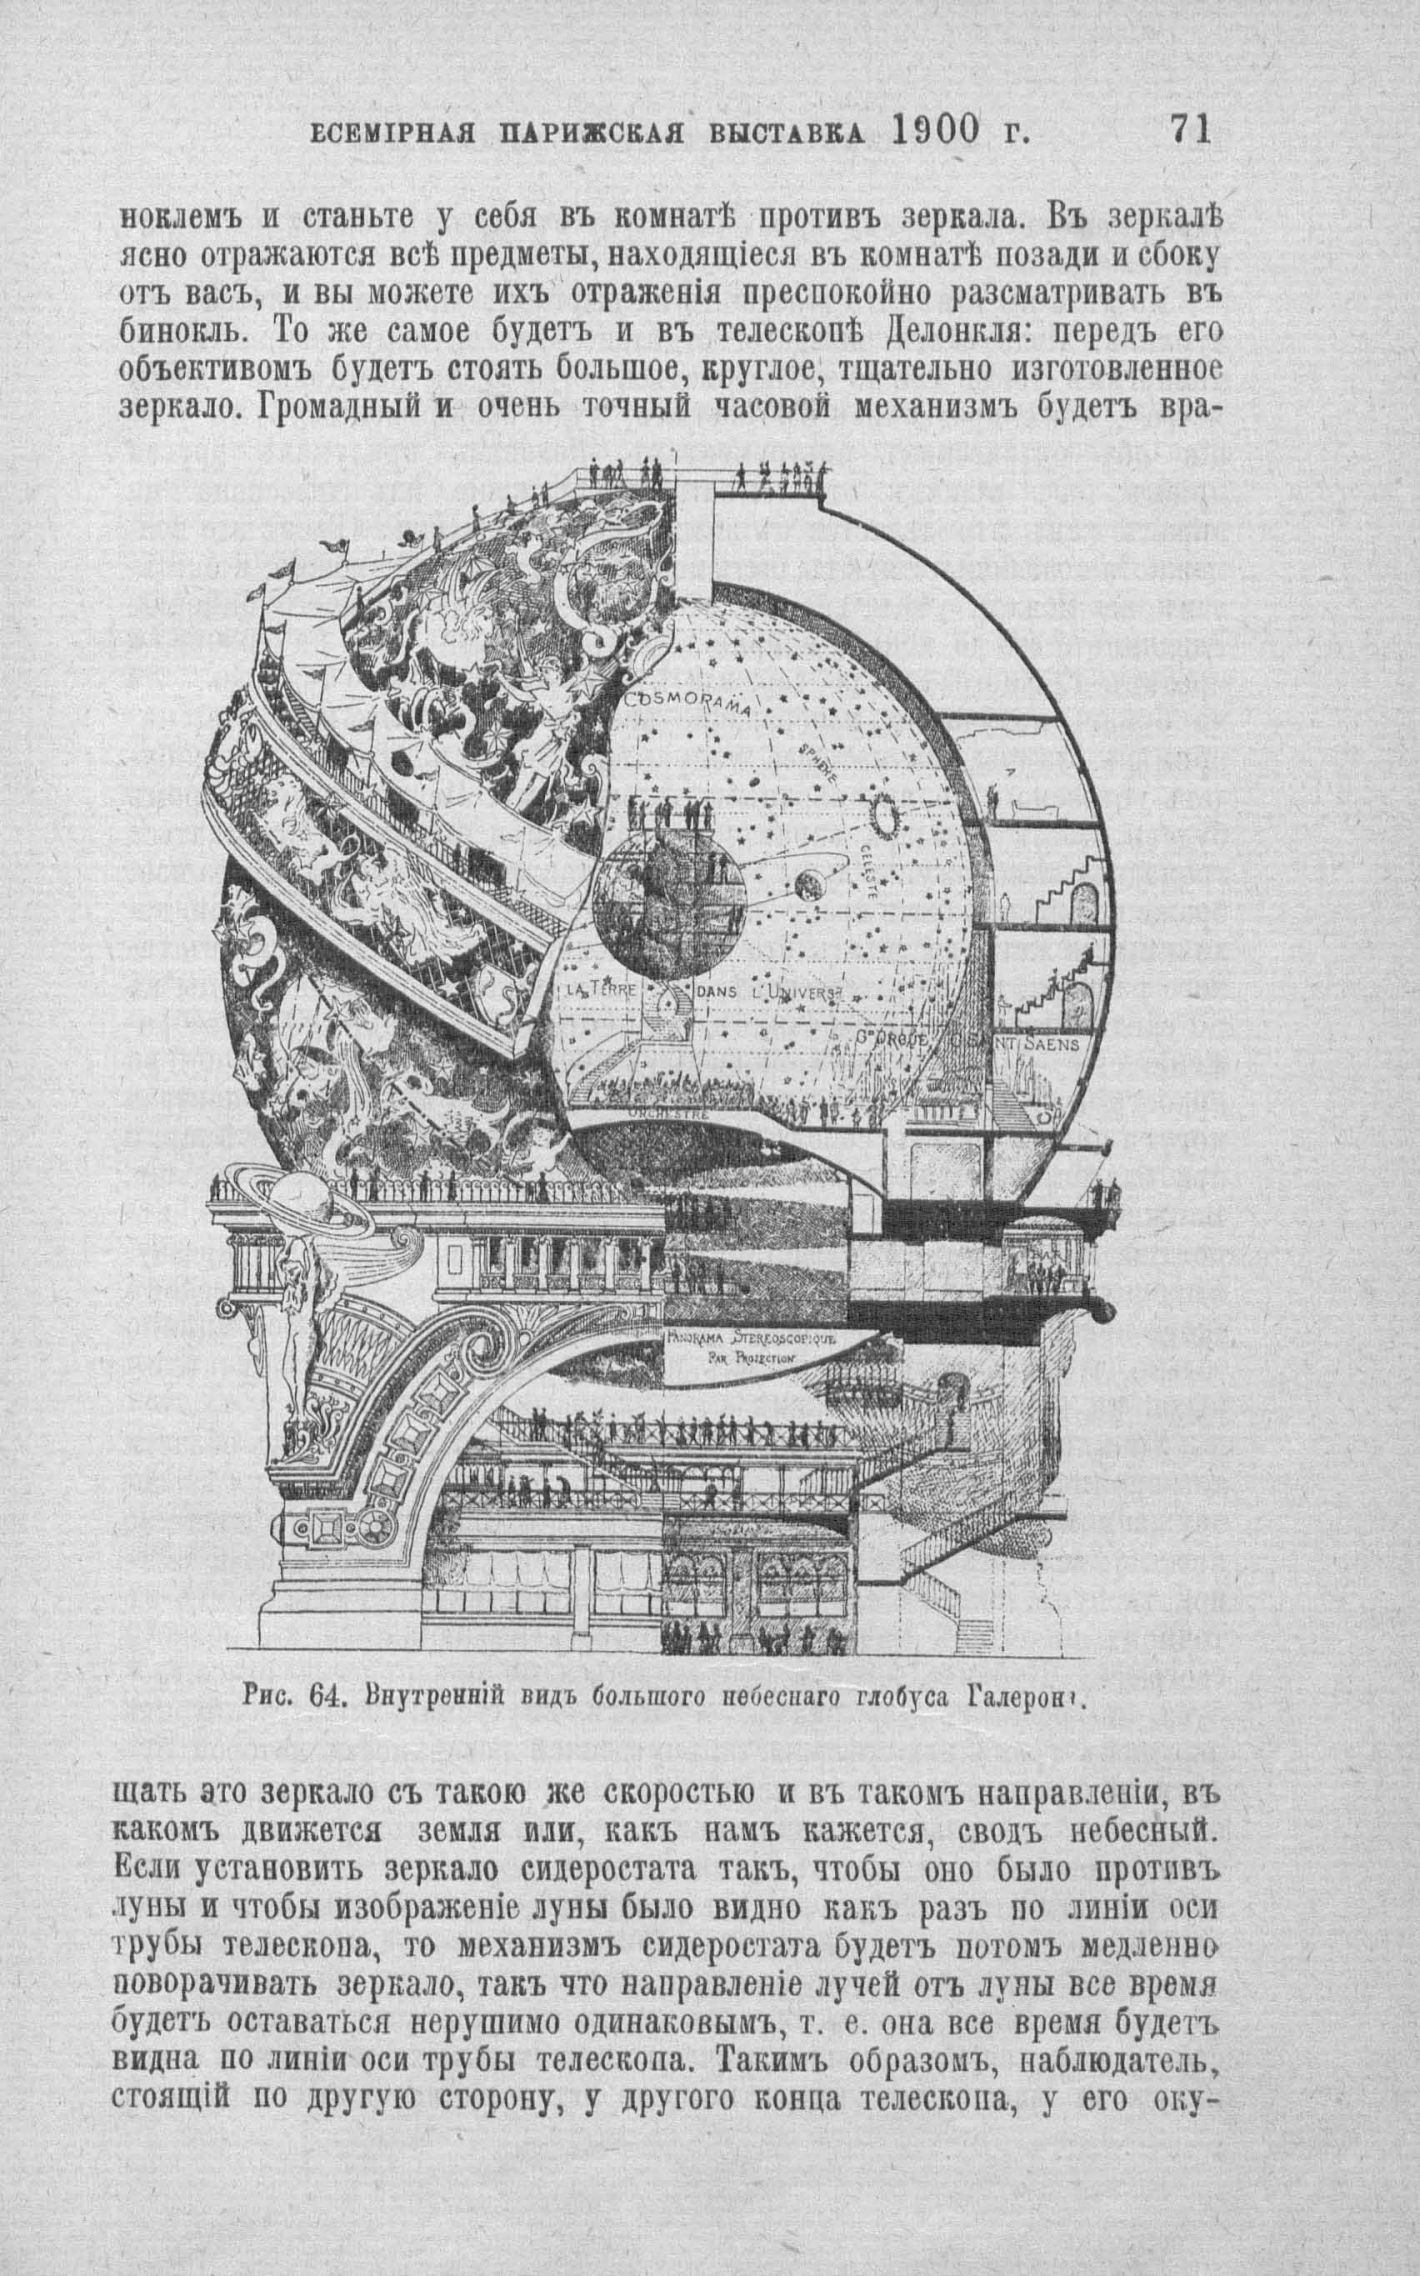 Всемирная выставка 1900 года в Париже. Внутренний вид большого небесного глобуса Галерона